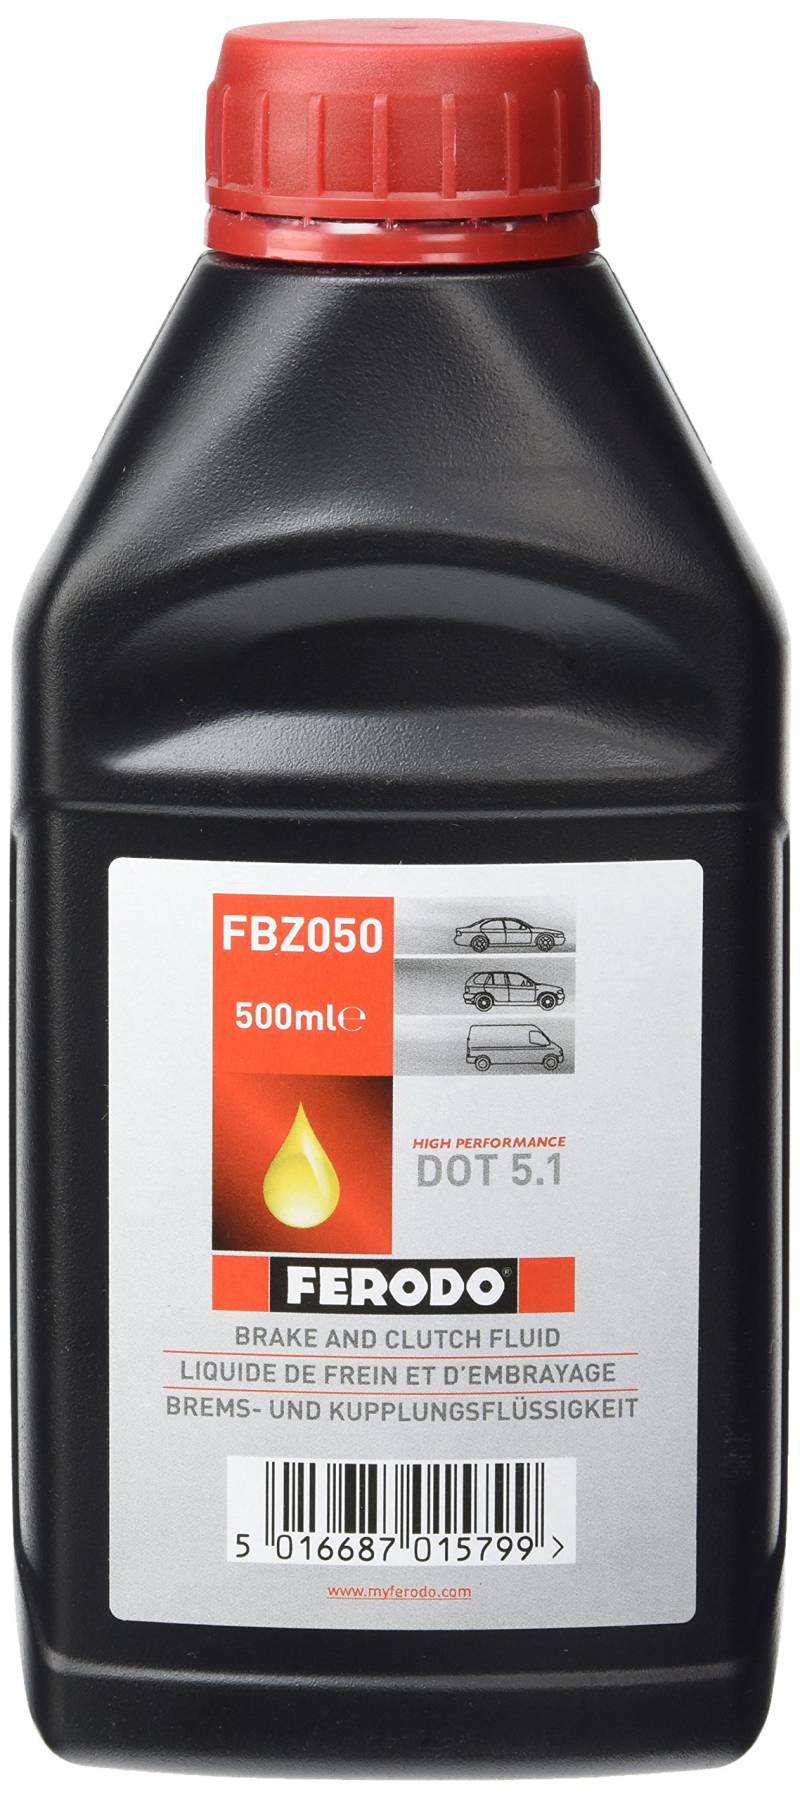 Ferodo FBZ050 Bremskraftverstärker, Bidon de 500 ml von Ferodo